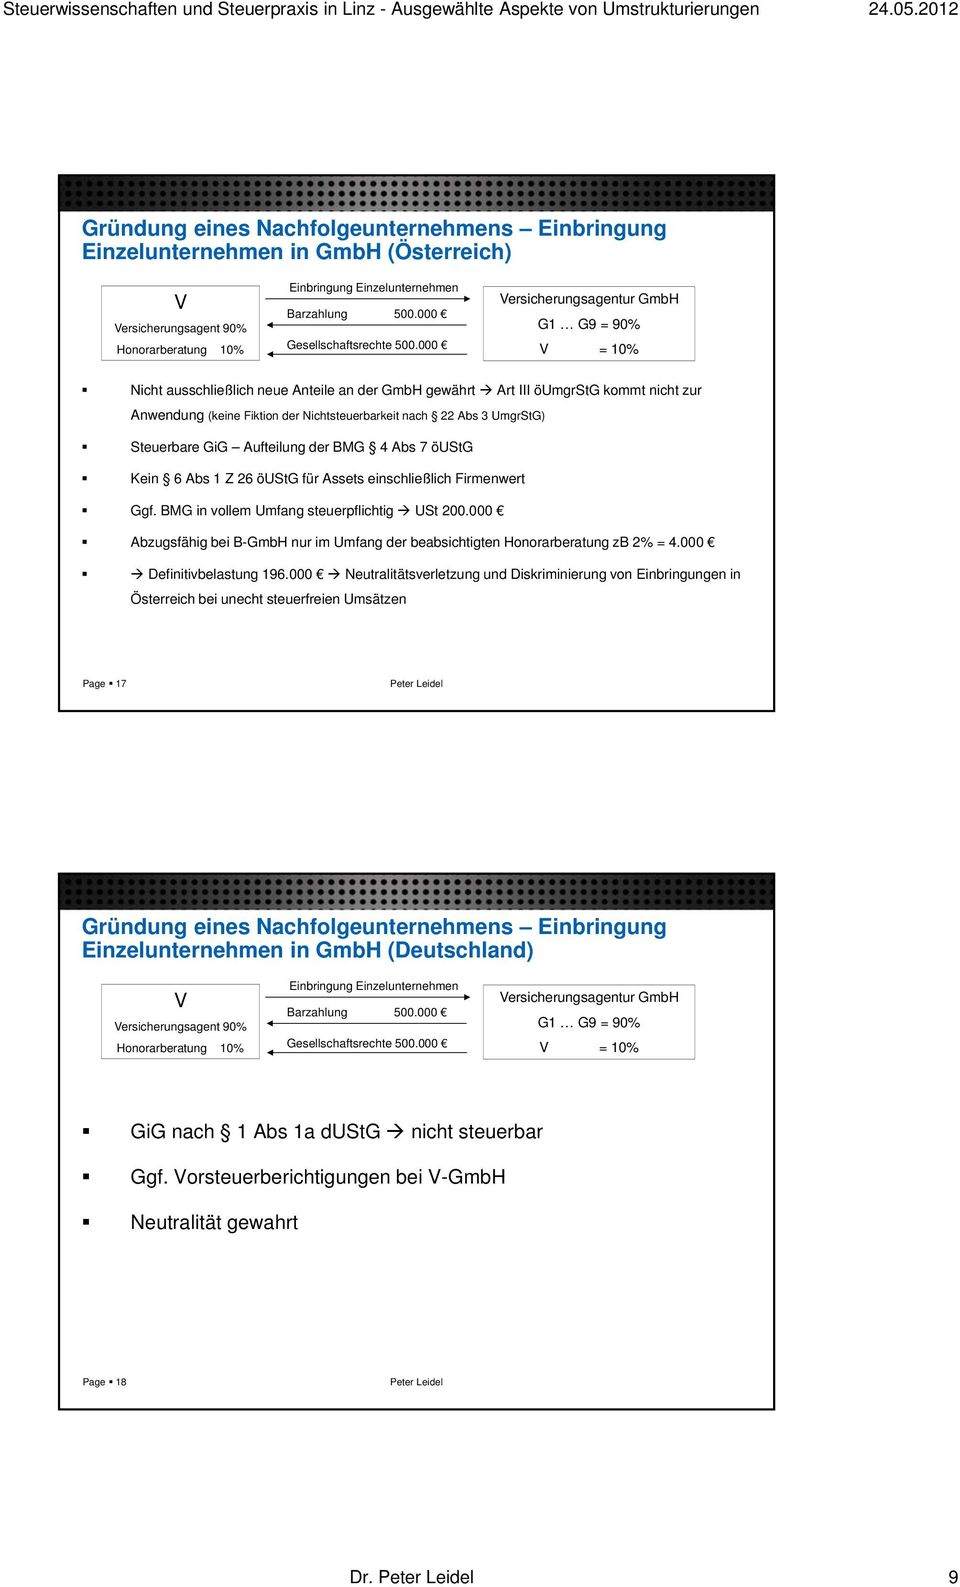 000 Versicherungsagentur GmbH G1 G9 = 90% V = 10% Nicht ausschließlich neue Anteile an der GmbH gewährt Art III öumgrstg kommt nicht zur Anwendung (keine Fiktion der Nichtsteuerbarkeit nach 22 Abs 3